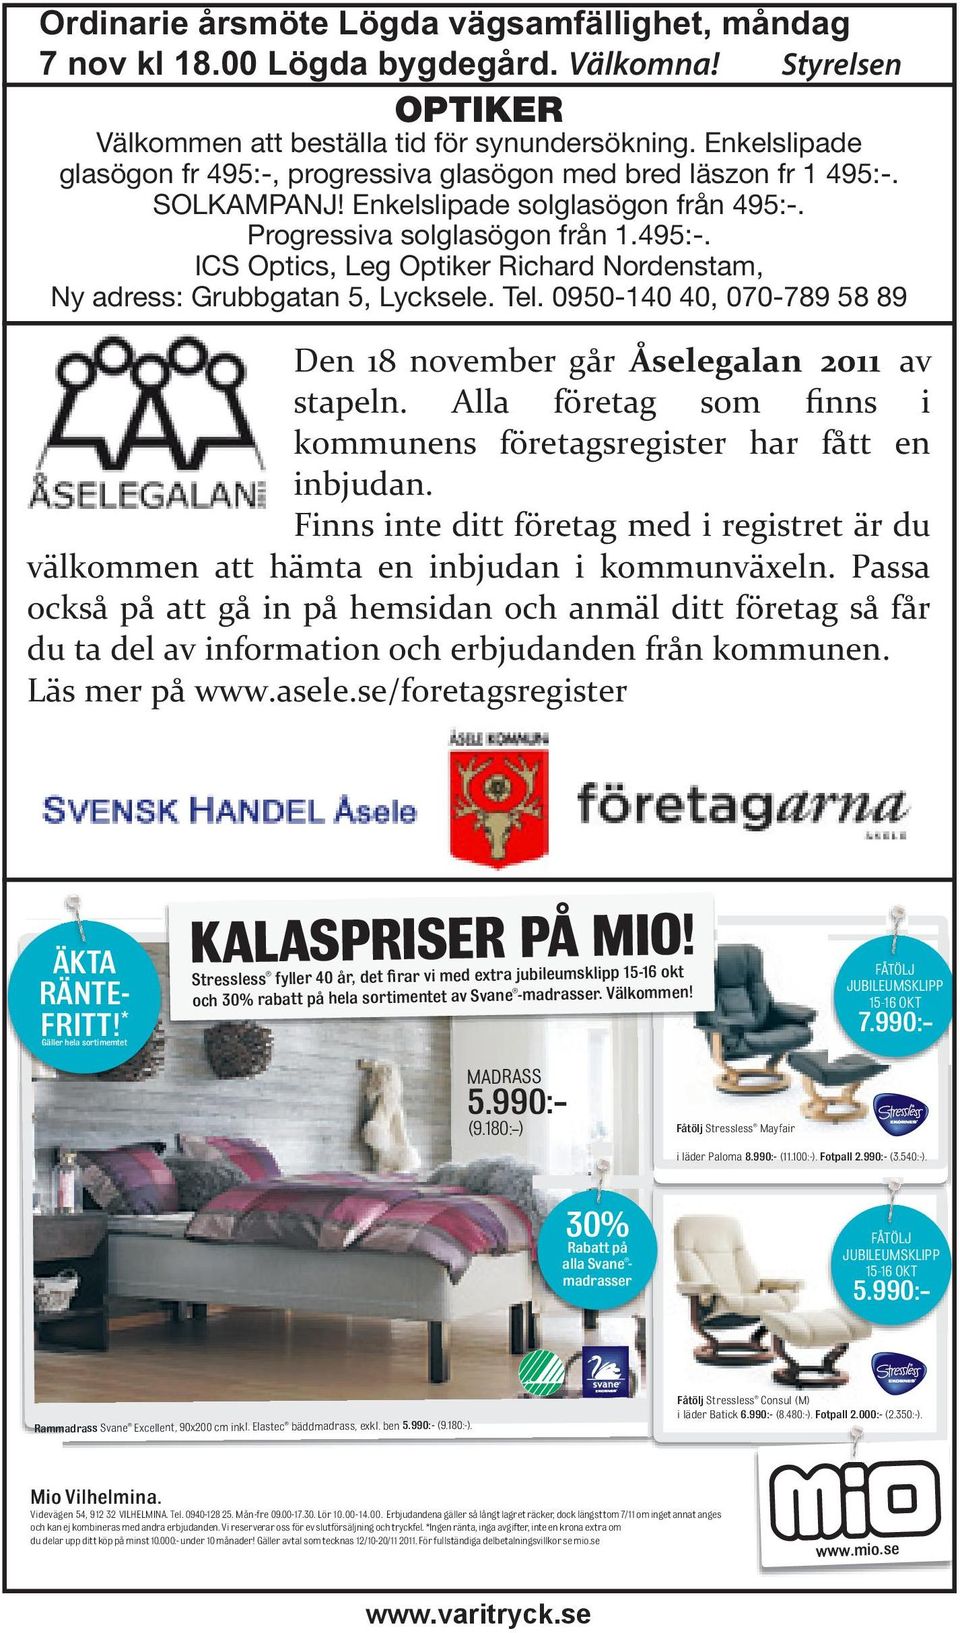 Tel. 0950-140 40, 070-789 58 89 Den 18 november går Åselegalan 2011 av stapeln. Alla företag som finns i kommunens företagsregister har fått en inbjudan.